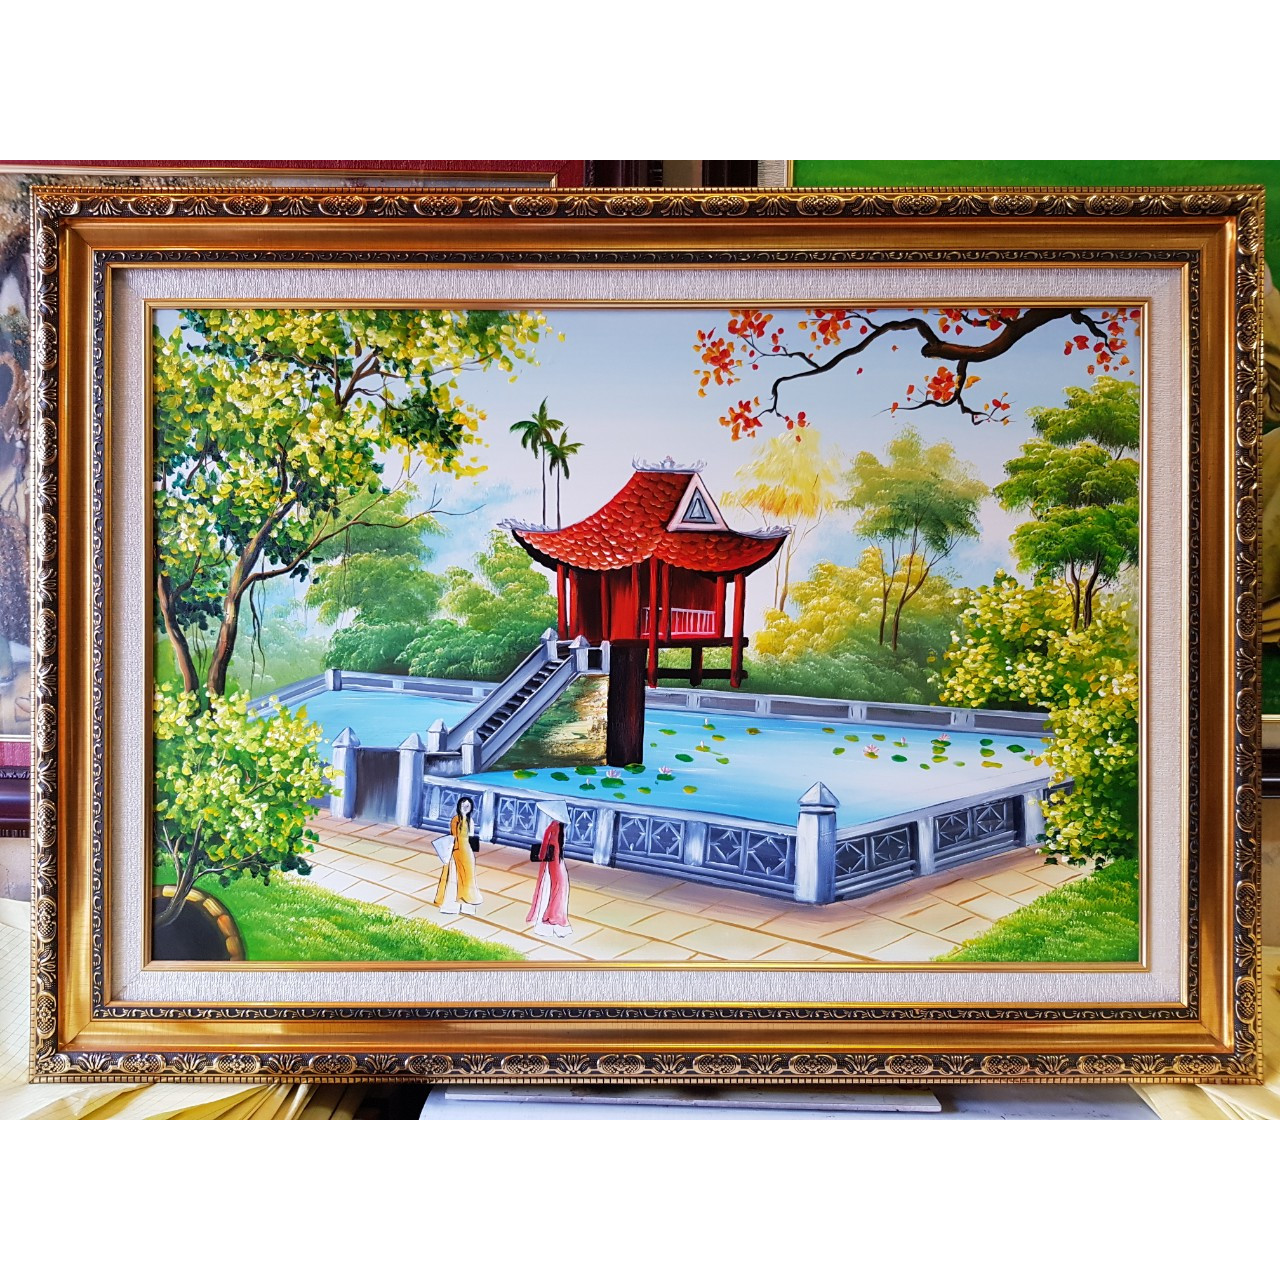 Sơn dầu chùa Một Cột ở Việt Nam là một tác phẩm nghệ thuật đẹp và độc đáo, thể hiện được tinh thần và truyền thống đạo Phật của người Việt. Nếu bạn có cơ hội, đừng bỏ qua việc chiêm ngưỡng bức tranh tuyệt đẹp này và tìm hiểu thêm về văn hóa và lịch sử của đất nước.